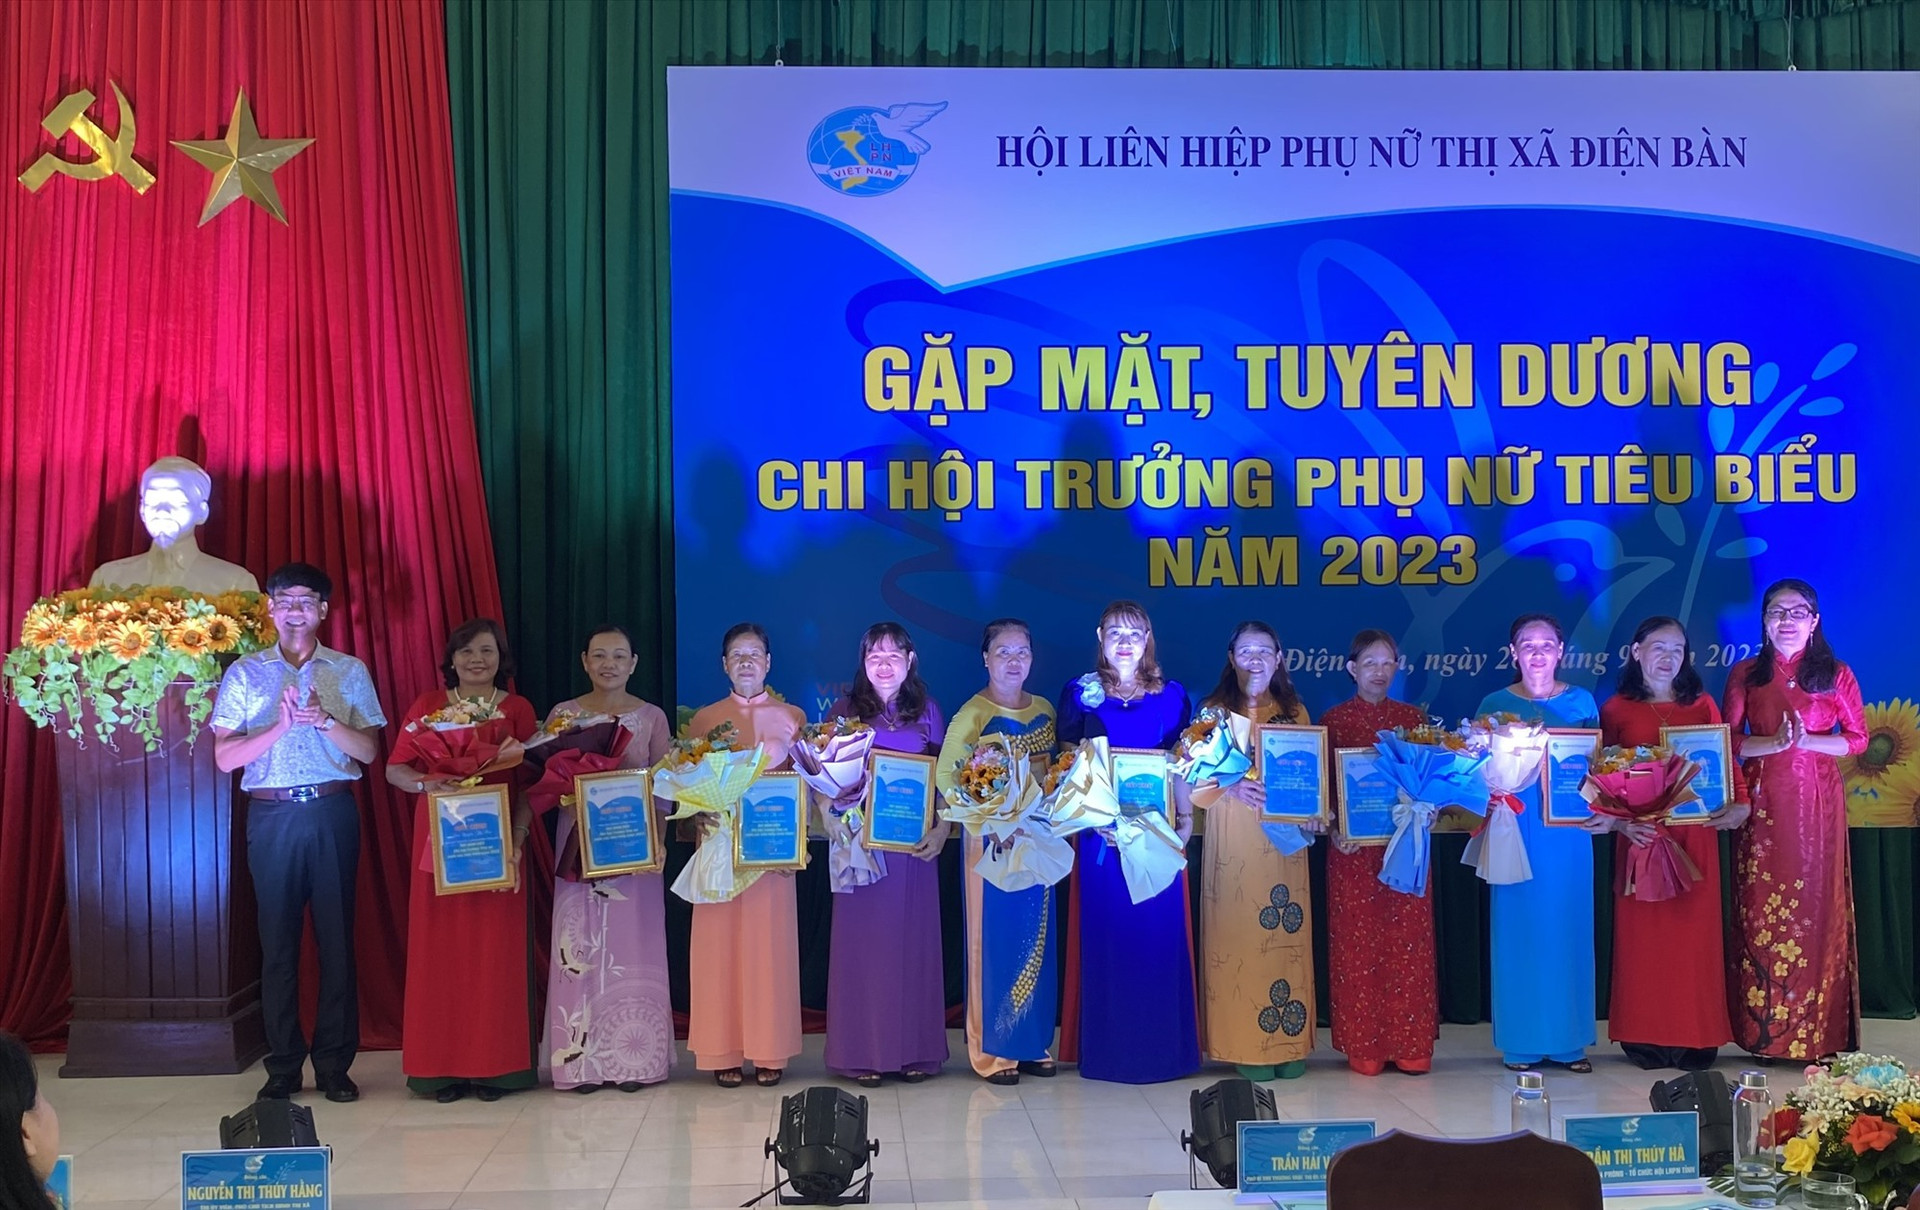 Hội LHPN Điện Bàn tuyên dương khen thưởng 20 chi hội trưởng phụ nữ tiêu biểu. Ảnh: V.L